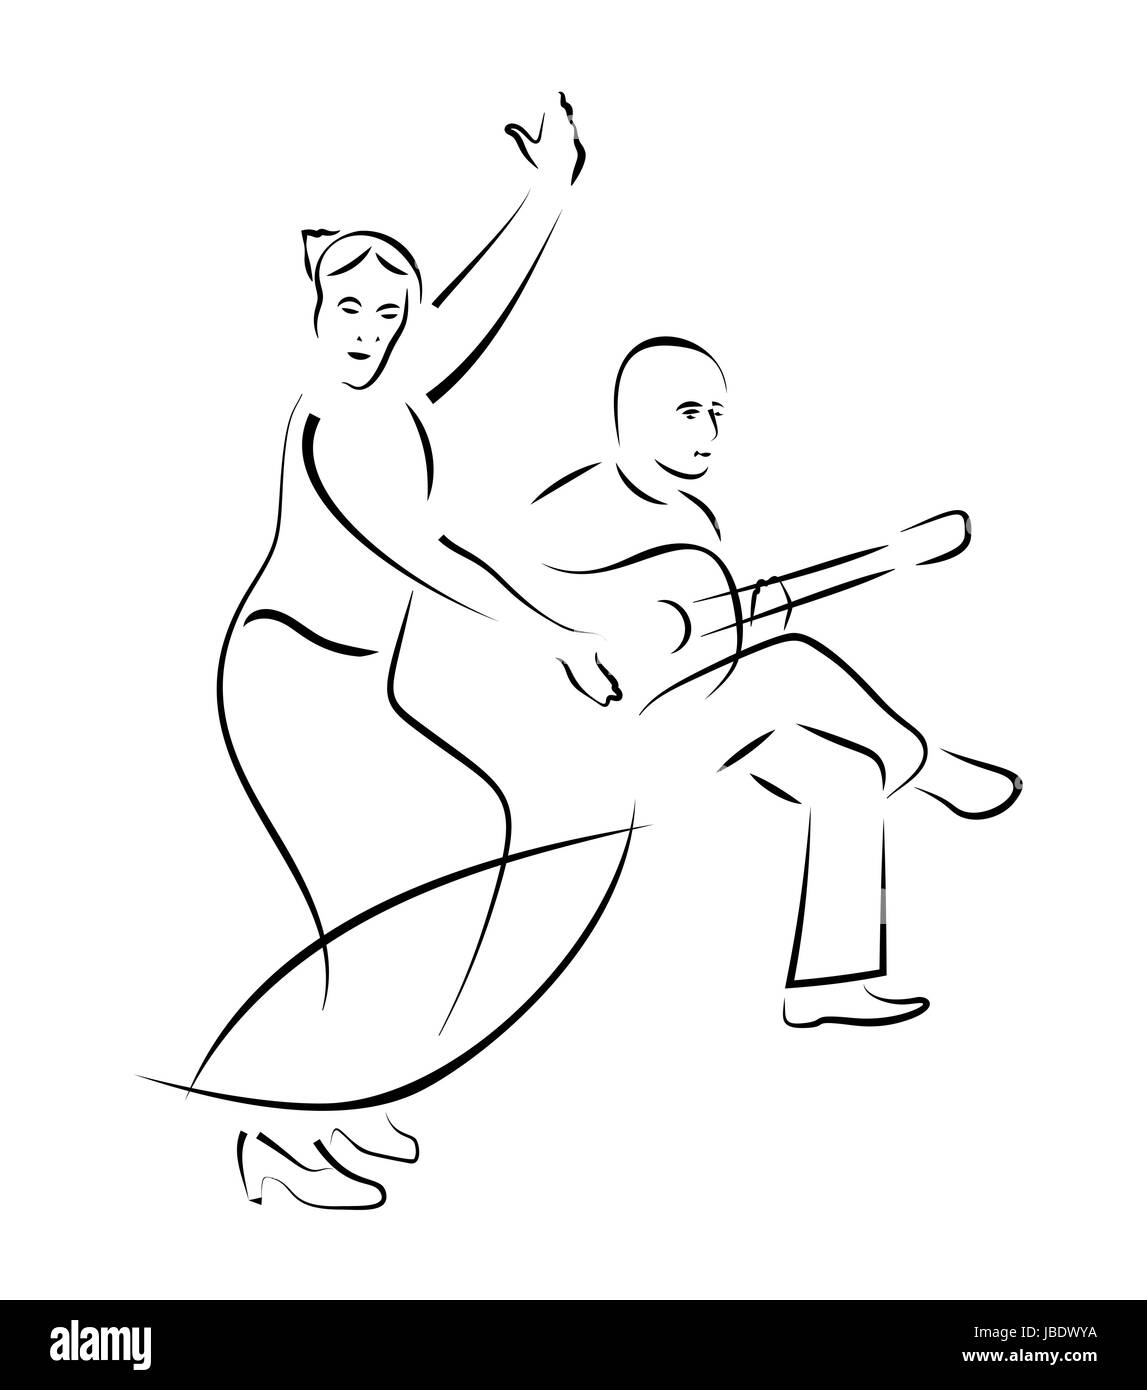 La ballerina di flamenco e il chitarrista - caligraphy stile di disegno vettoriale Illustrazione Vettoriale